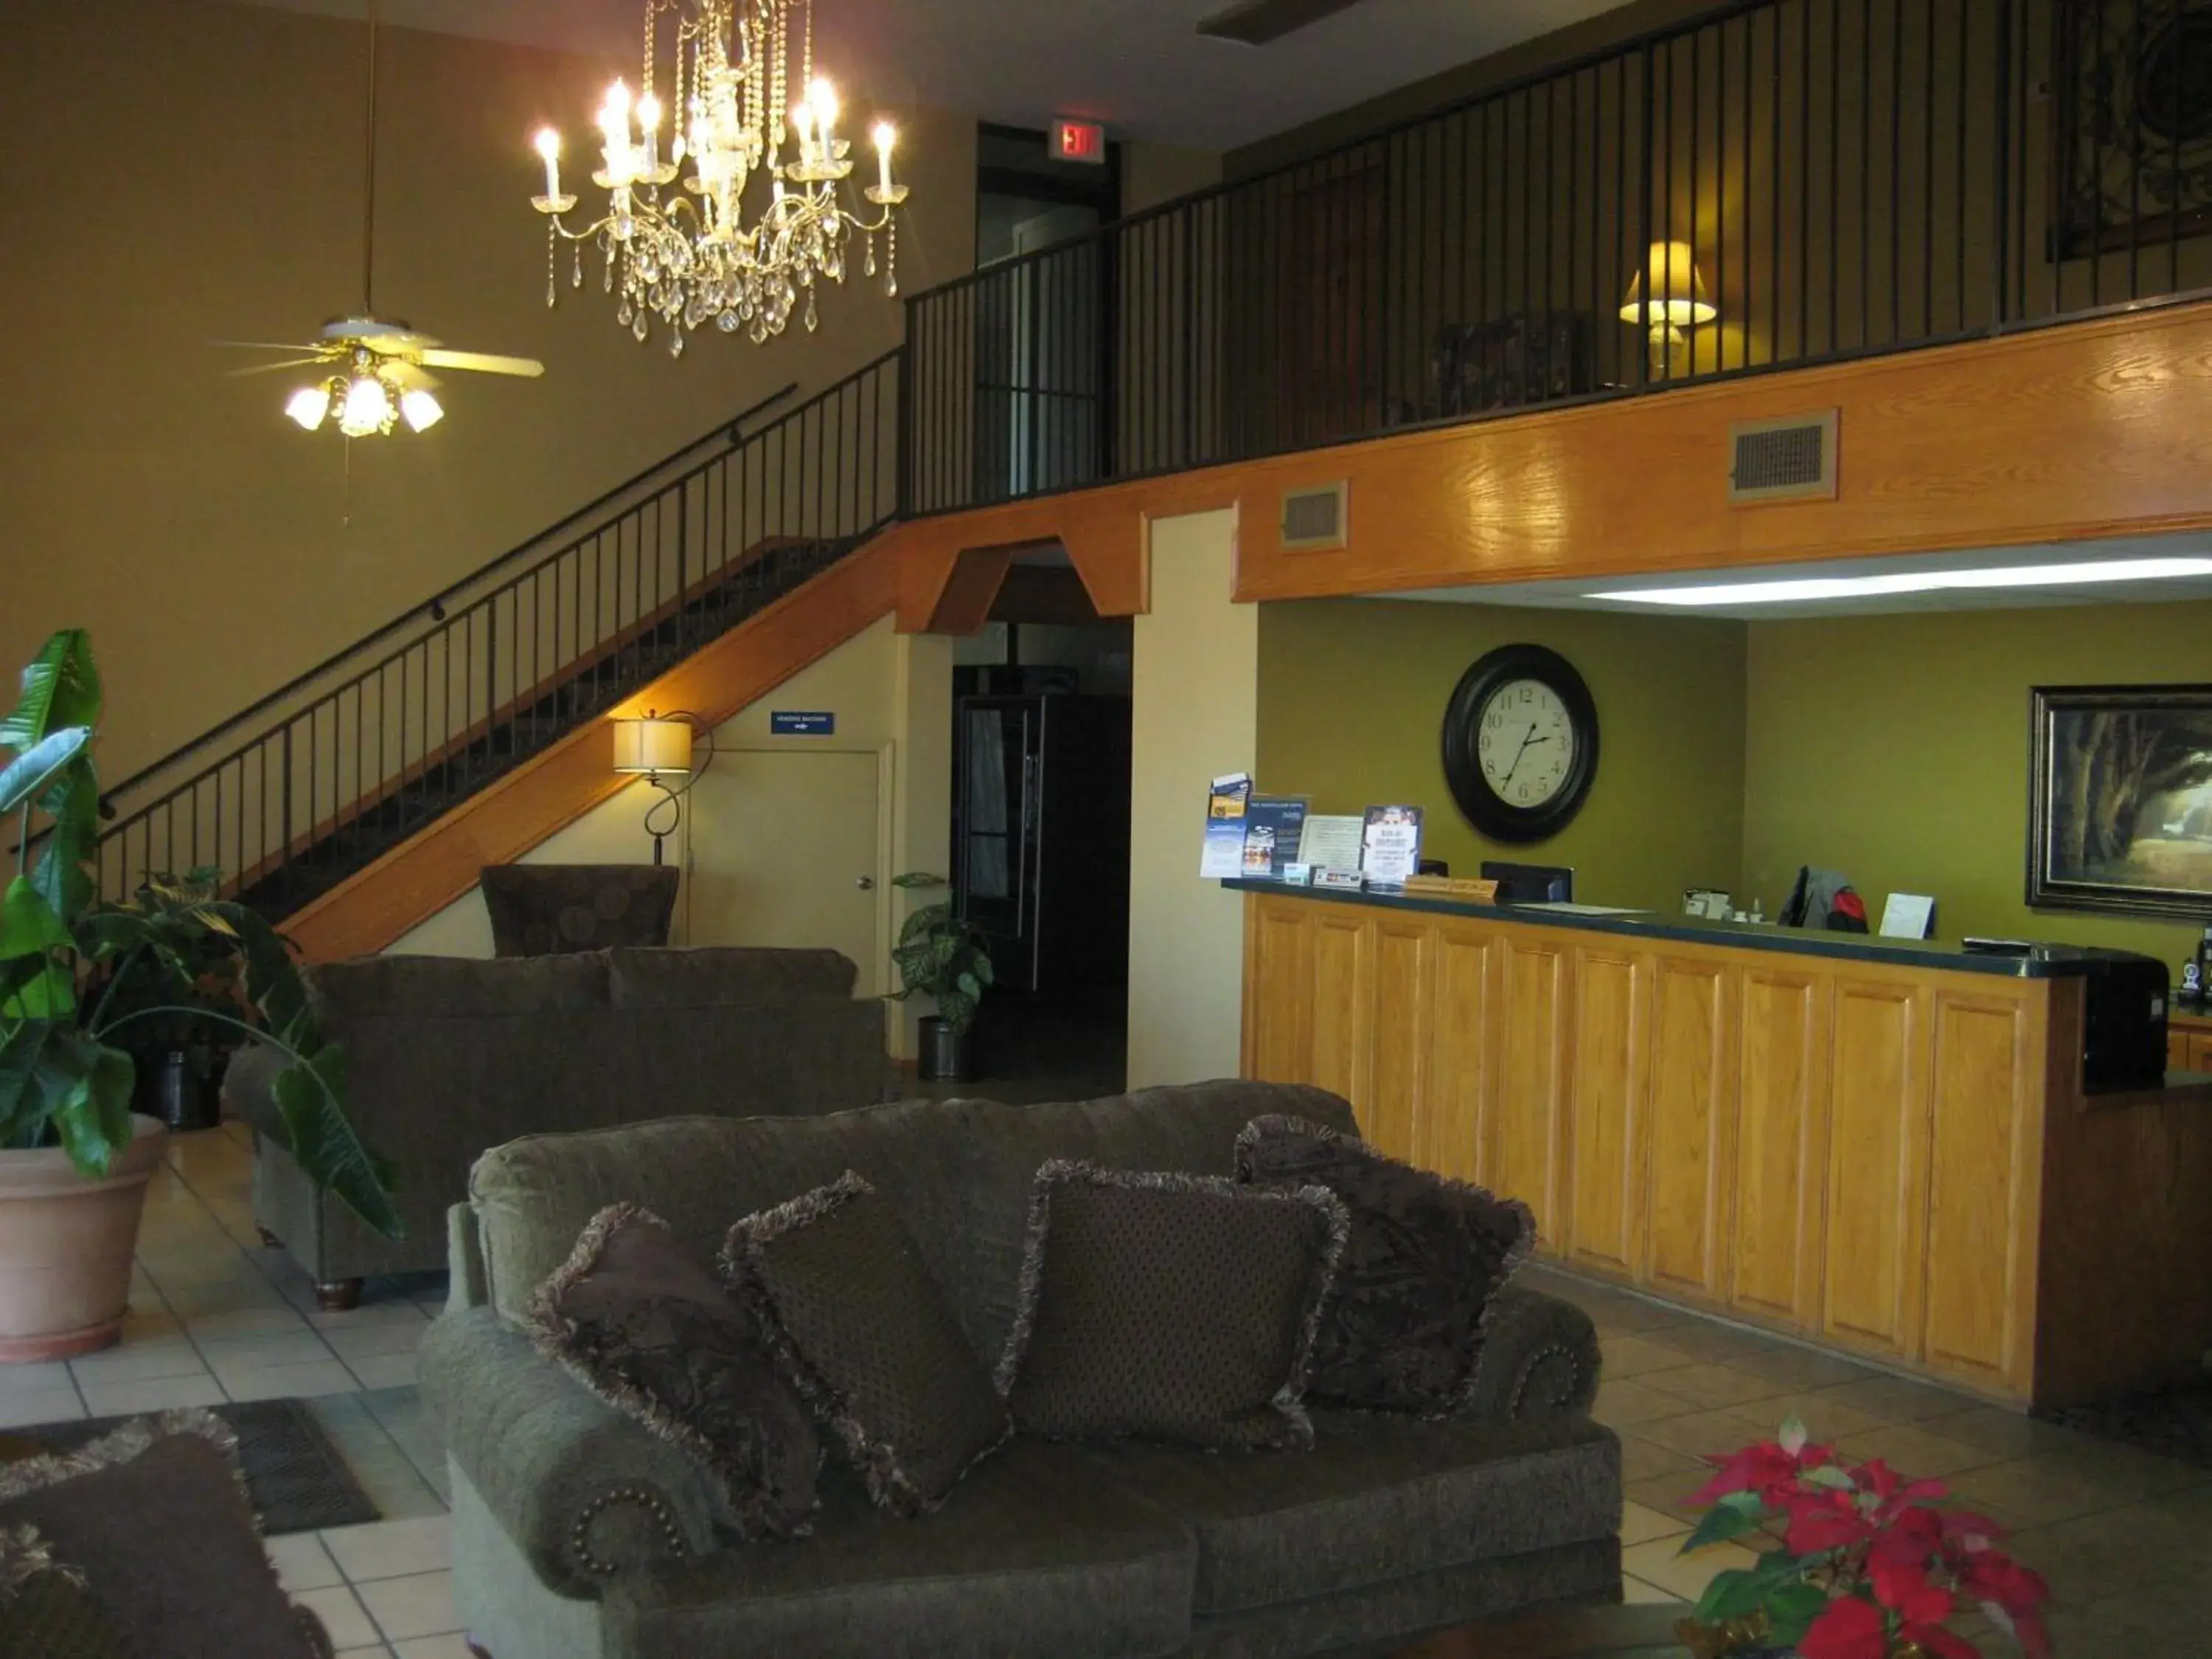 Lobby or reception, Lobby/Reception in Walnut Inn